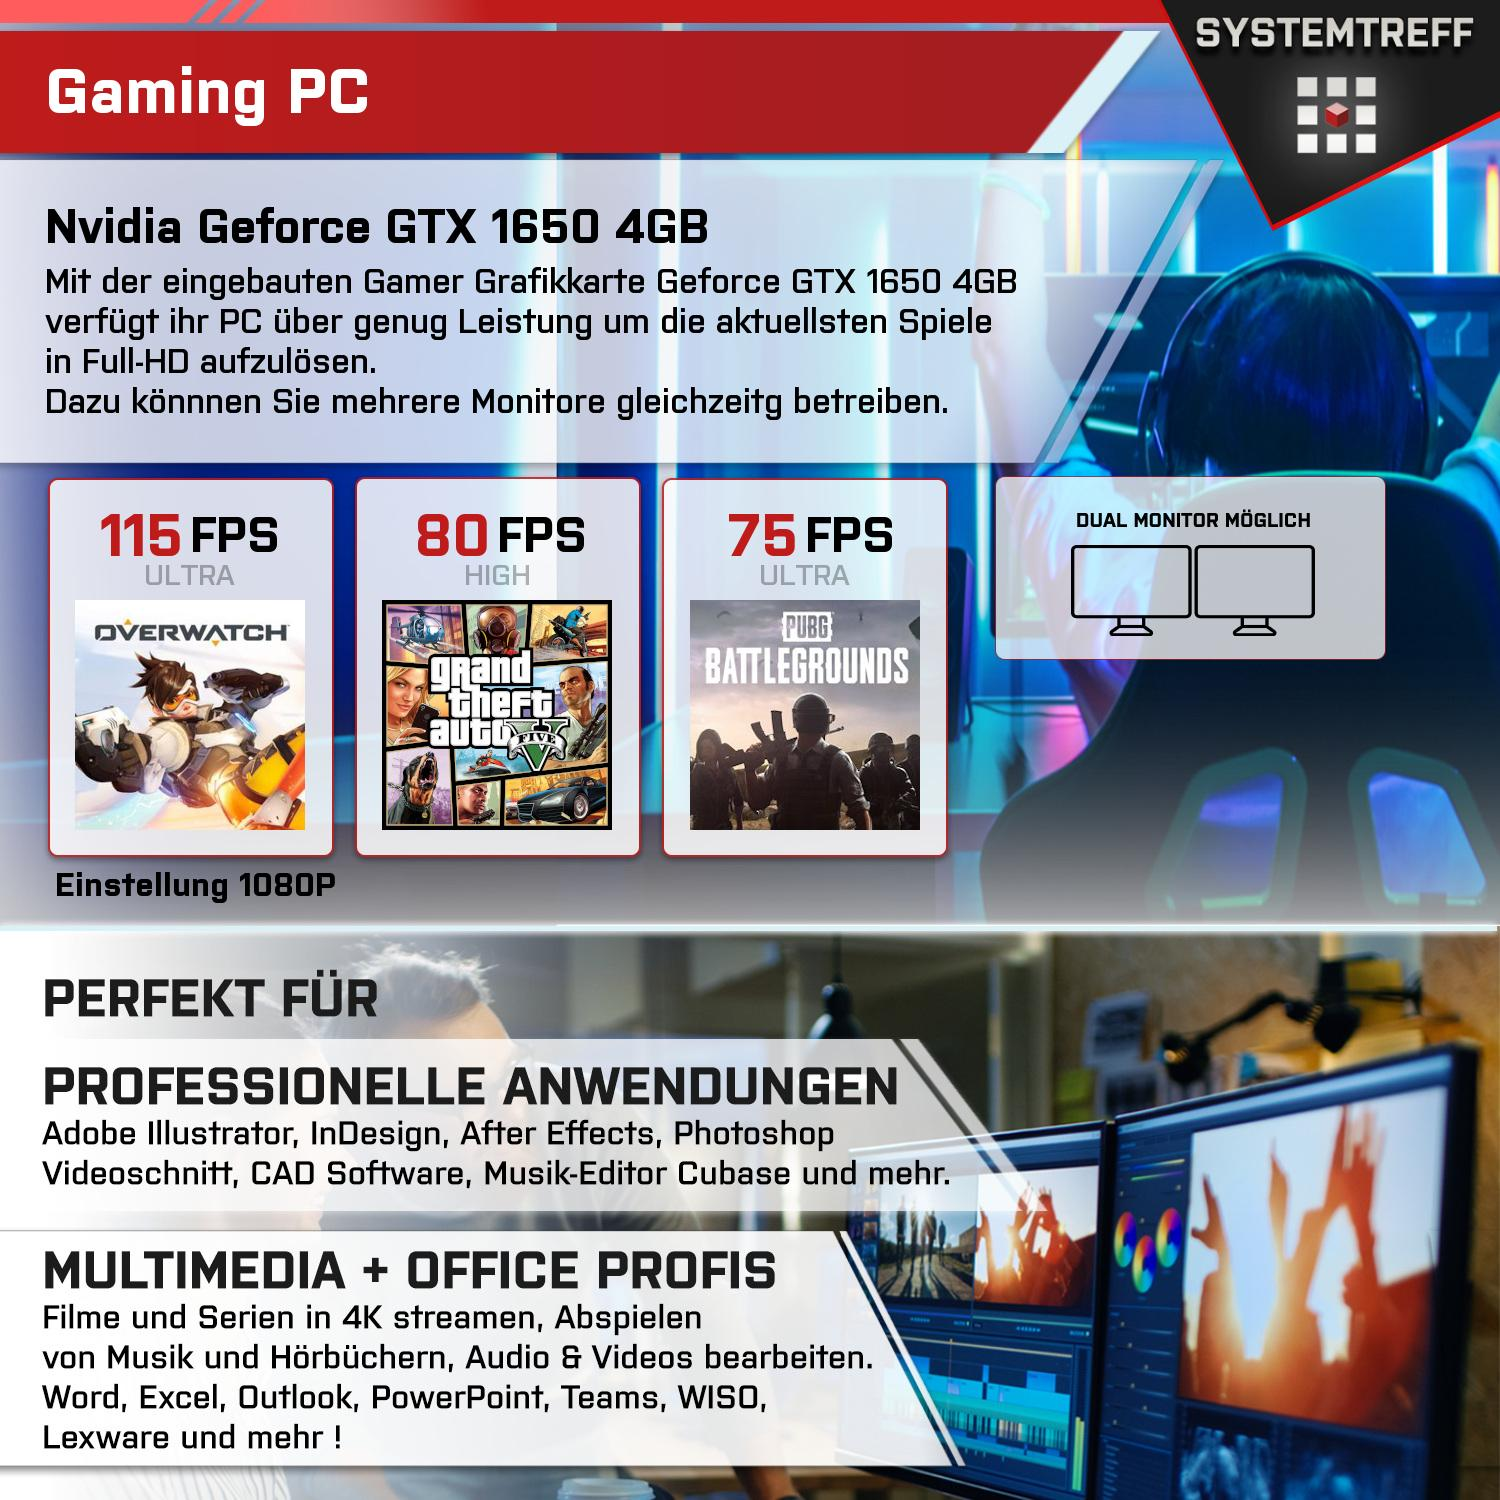 SYSTEMTREFF Gaming Komplett 512 GB Intel i5-11400 16 GB 4 mit 1650 GTX mSSD, Komplett GB GB, PC Core Nvidia 4 i5-11400, Prozessor, RAM, Geforce